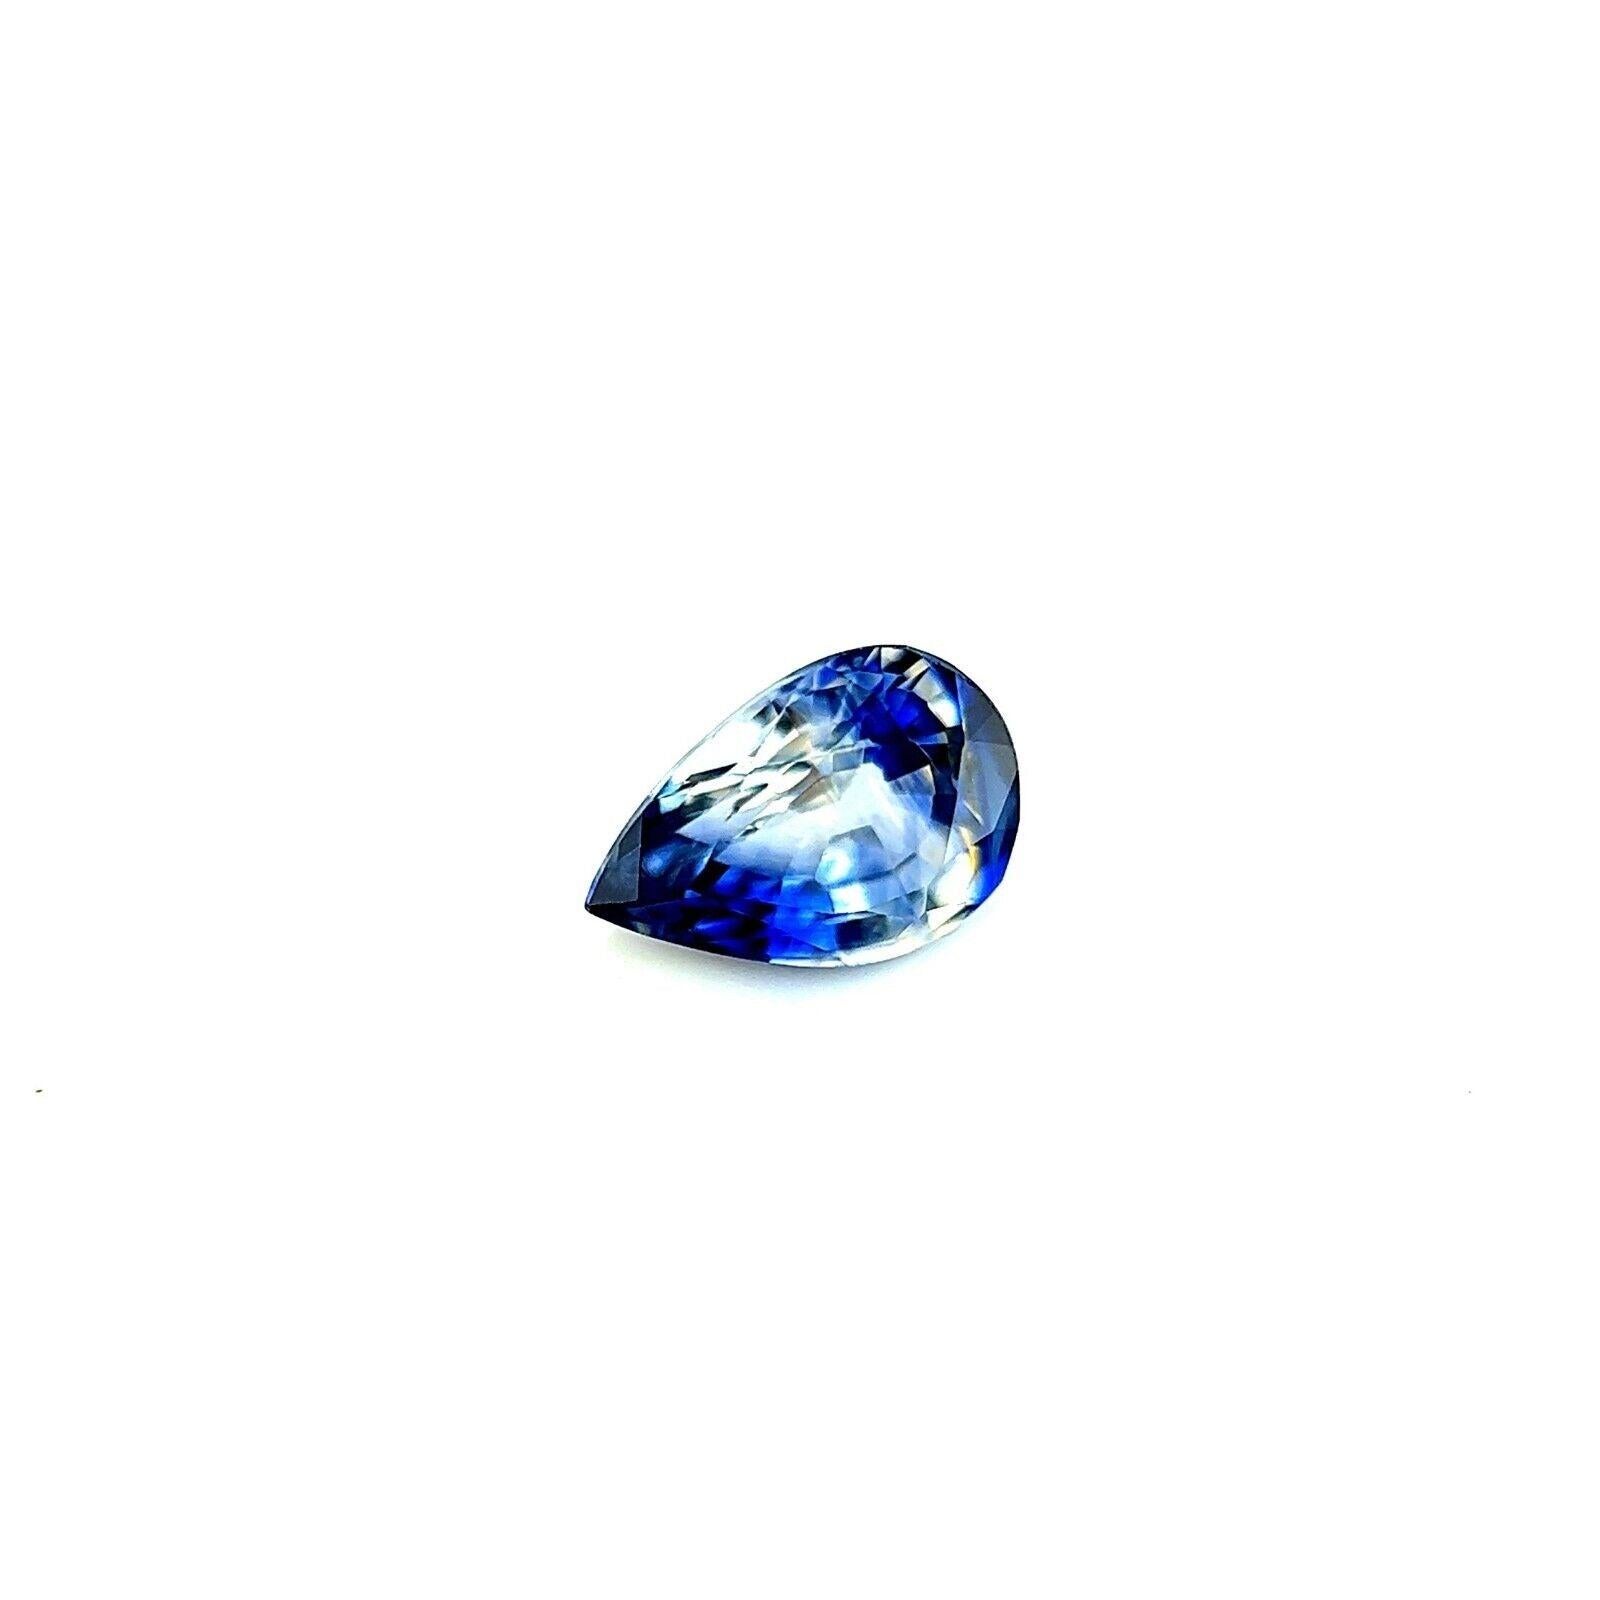 0.56ct Einzigartig Bi Farbe Lila Blau Ceylon Seltener Saphir Birnenschliff 7x5mm Edelstein VVS

Einzigartiger natürlicher lila-blauer Parti-Colour/Bi Colour Ceylon Saphir Edelstein.
0,56 Karat mit einem wunderschönen und einzigartigen